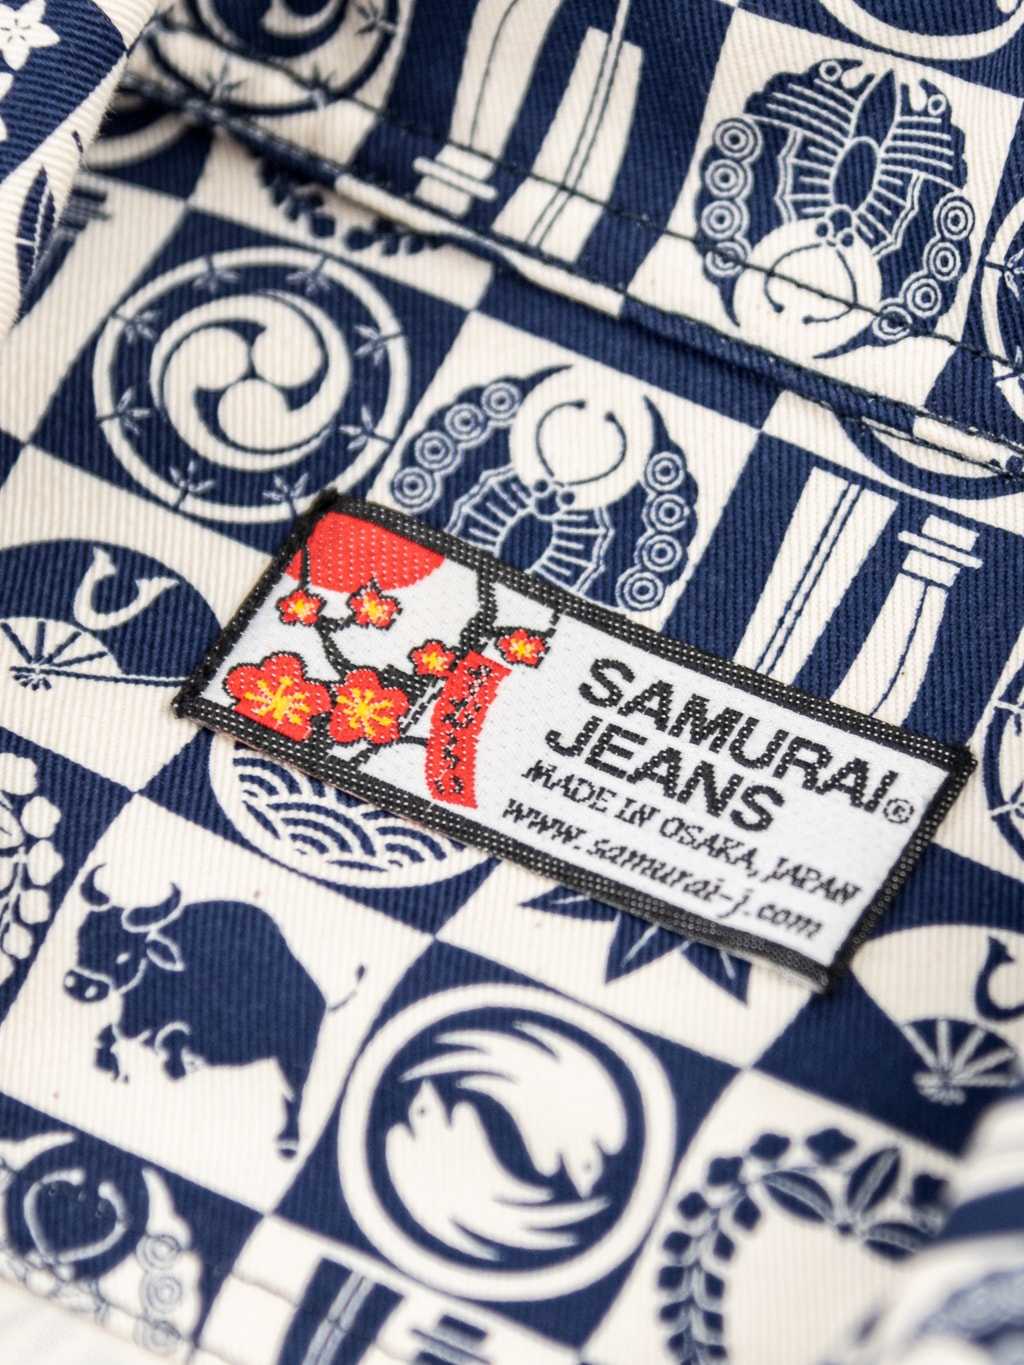 Samurai Jeans Ushiwaka Kamon Shirt label